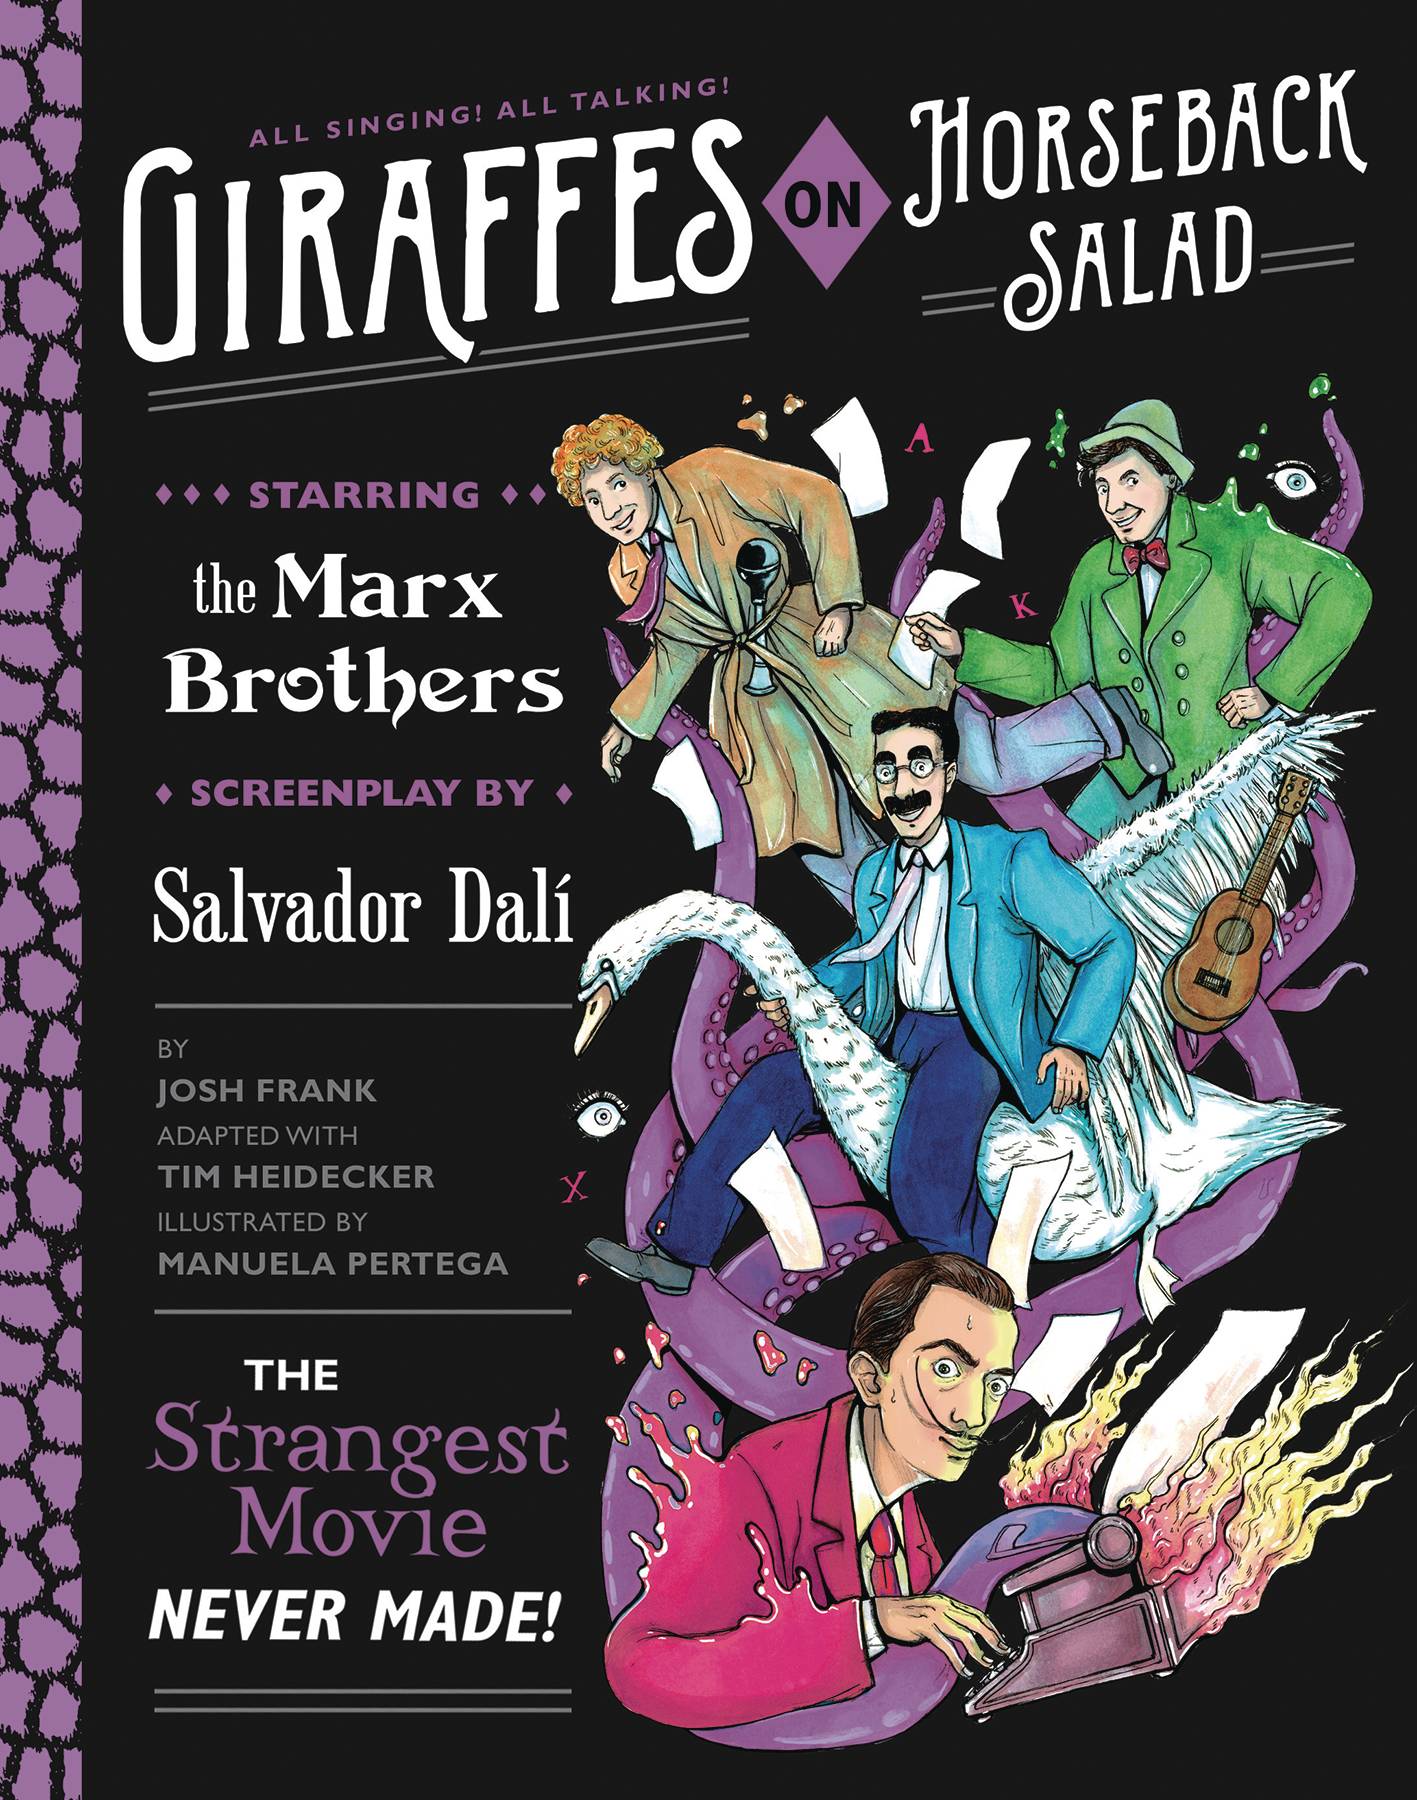 Giraffes On Horseback Salad Graphic Novel